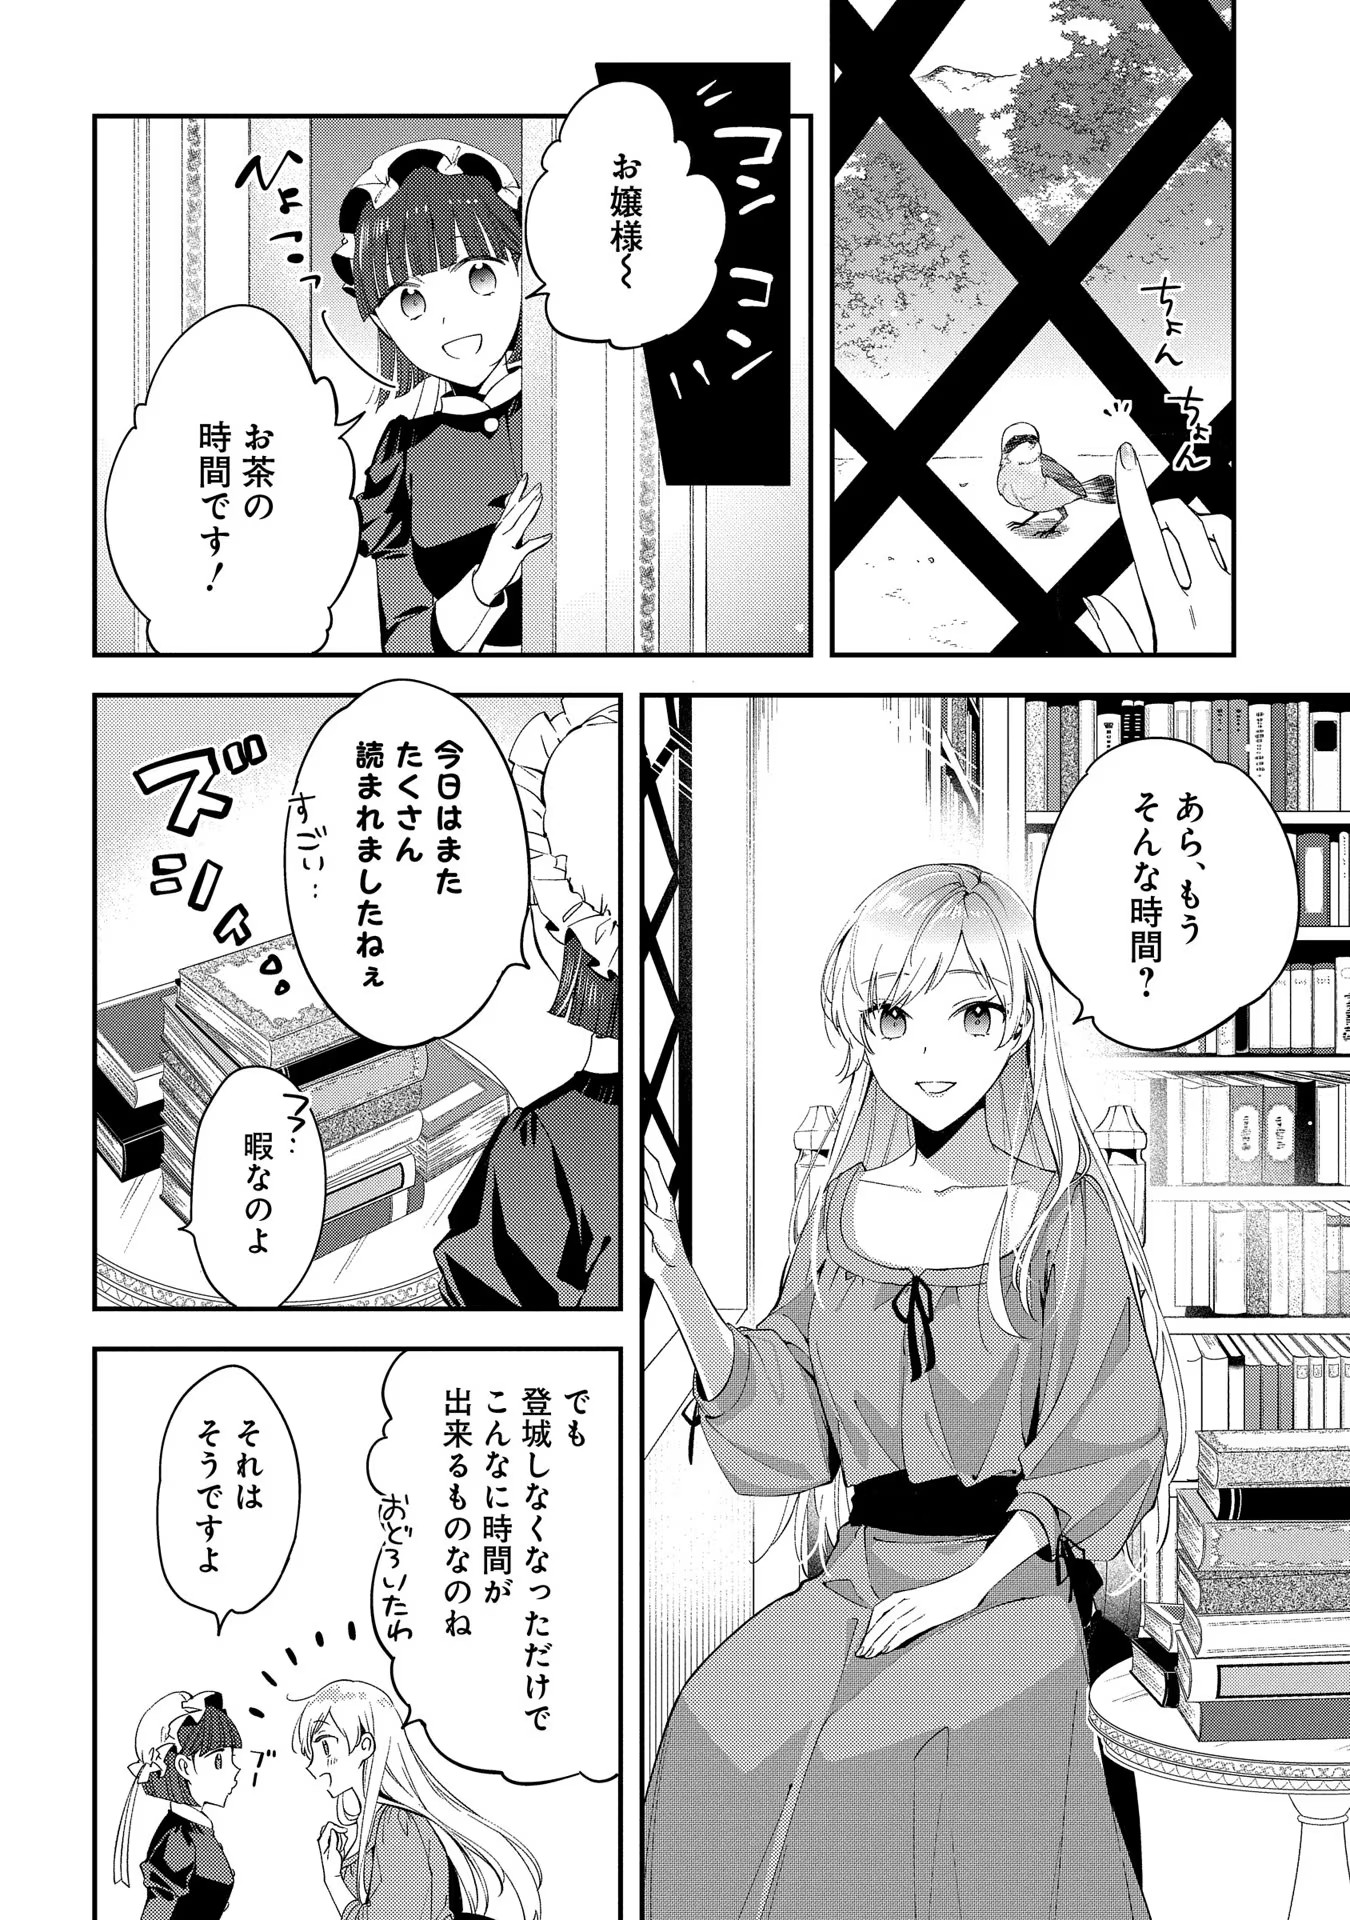 Outaishi ni Konyaku Hakisareta no de, Mou Baka no Furi wa Yameyou to Omoimasu - Chapter 3 - Page 2